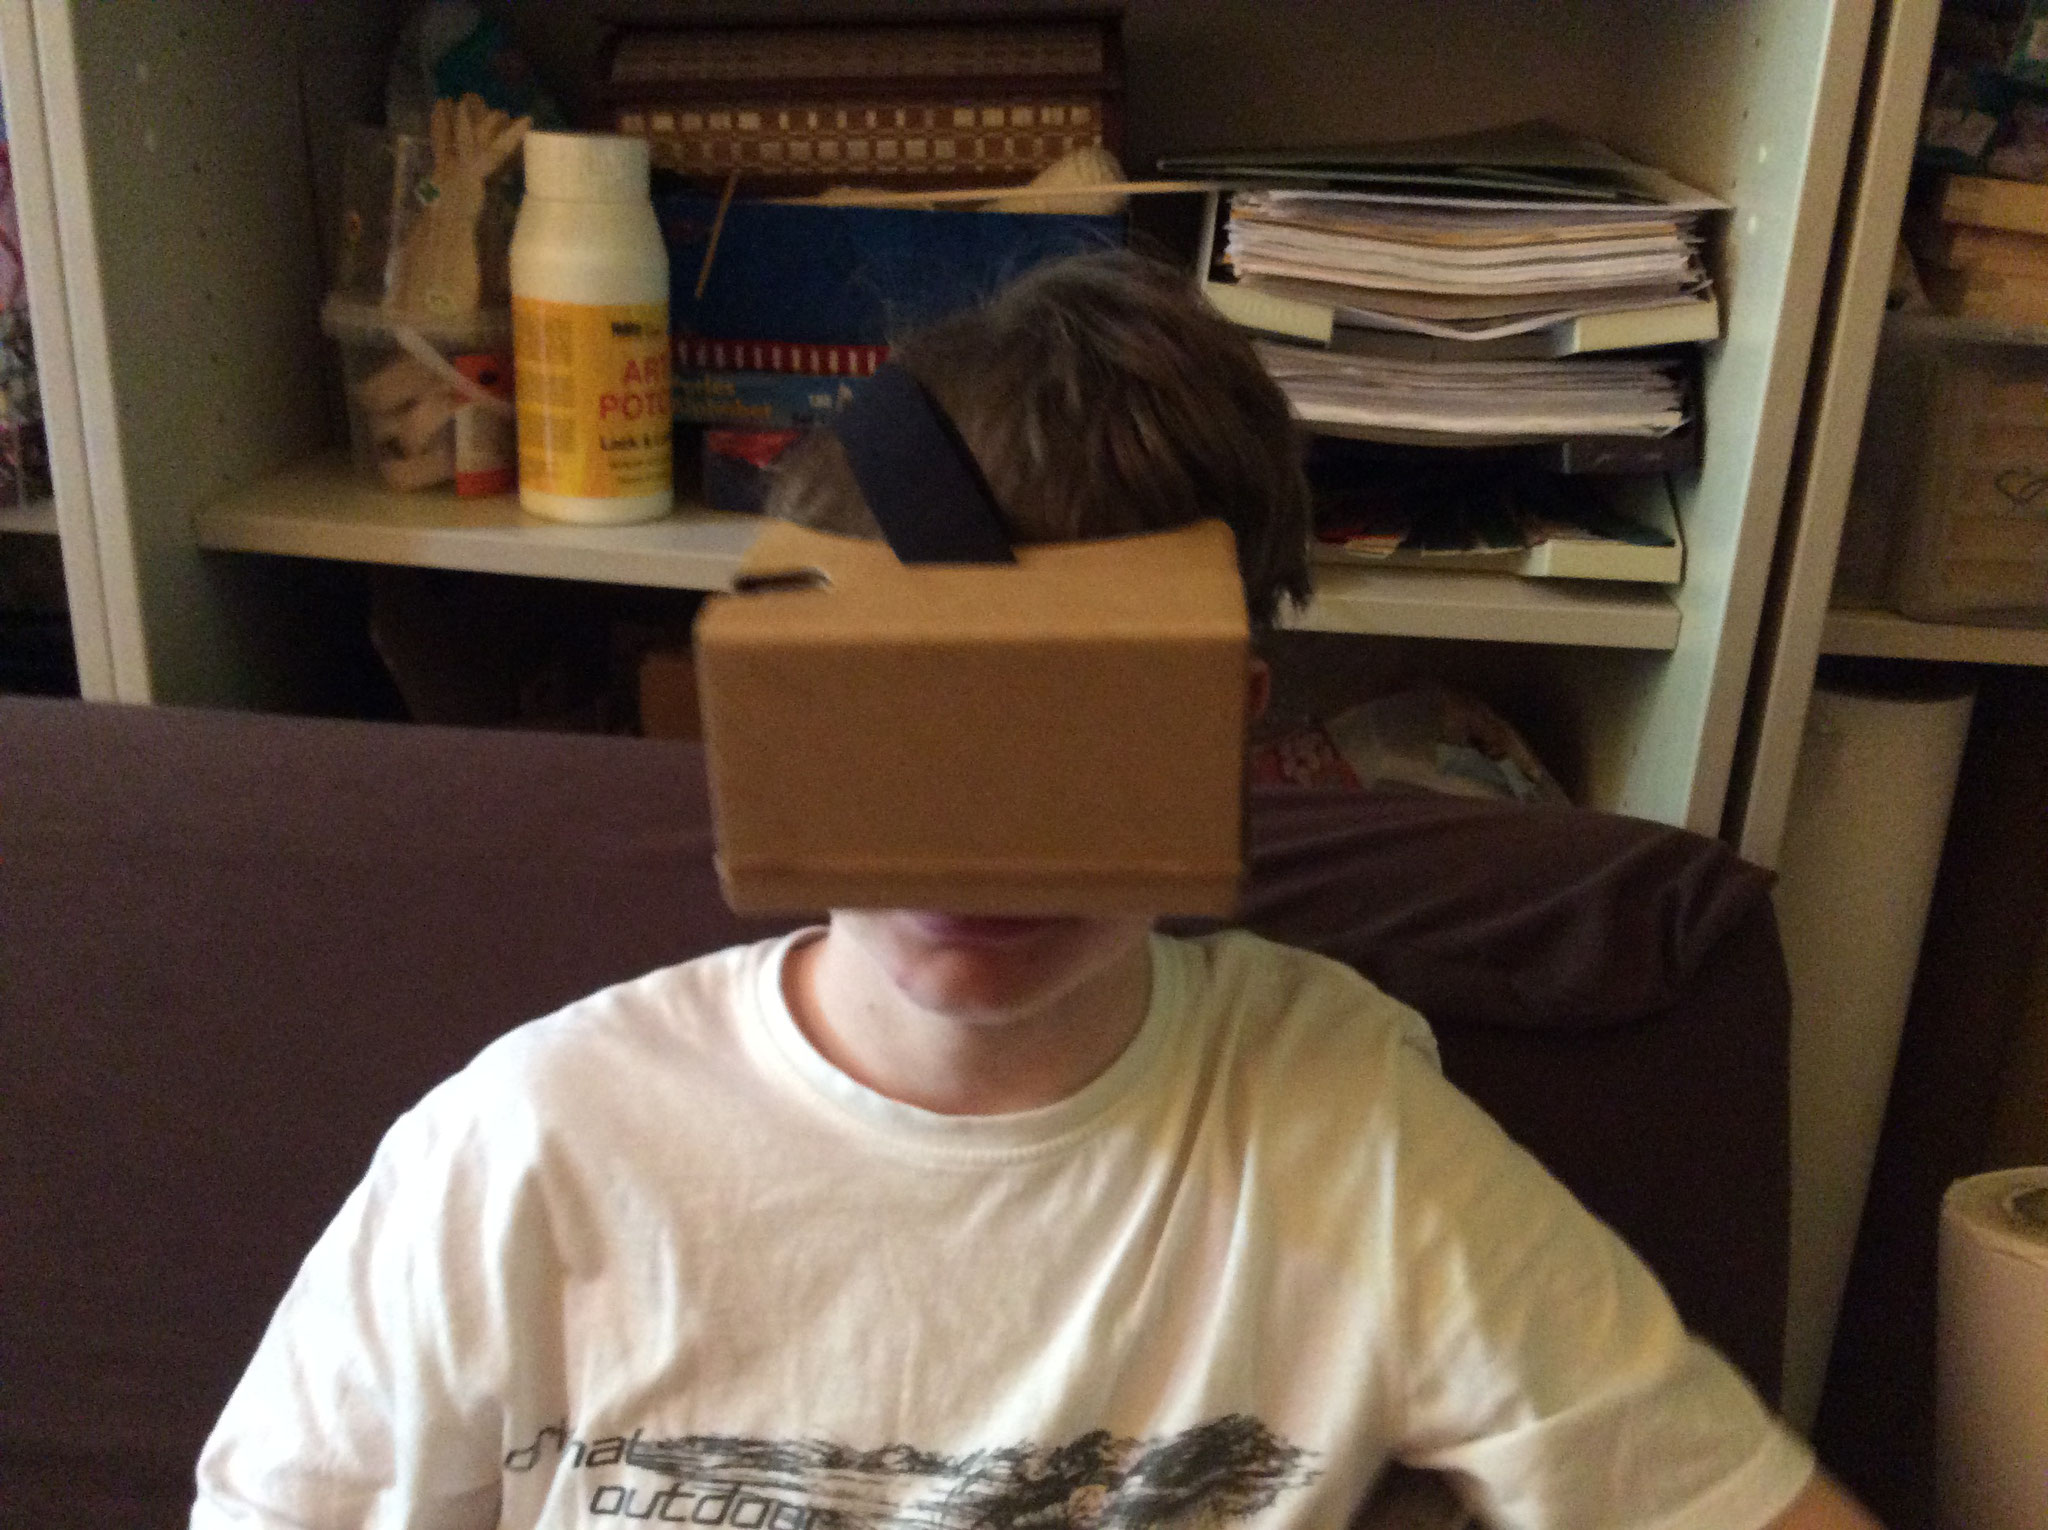 Hier sehen wir wie ein Kind die Selbstgemachte VR Brille ausprobiert